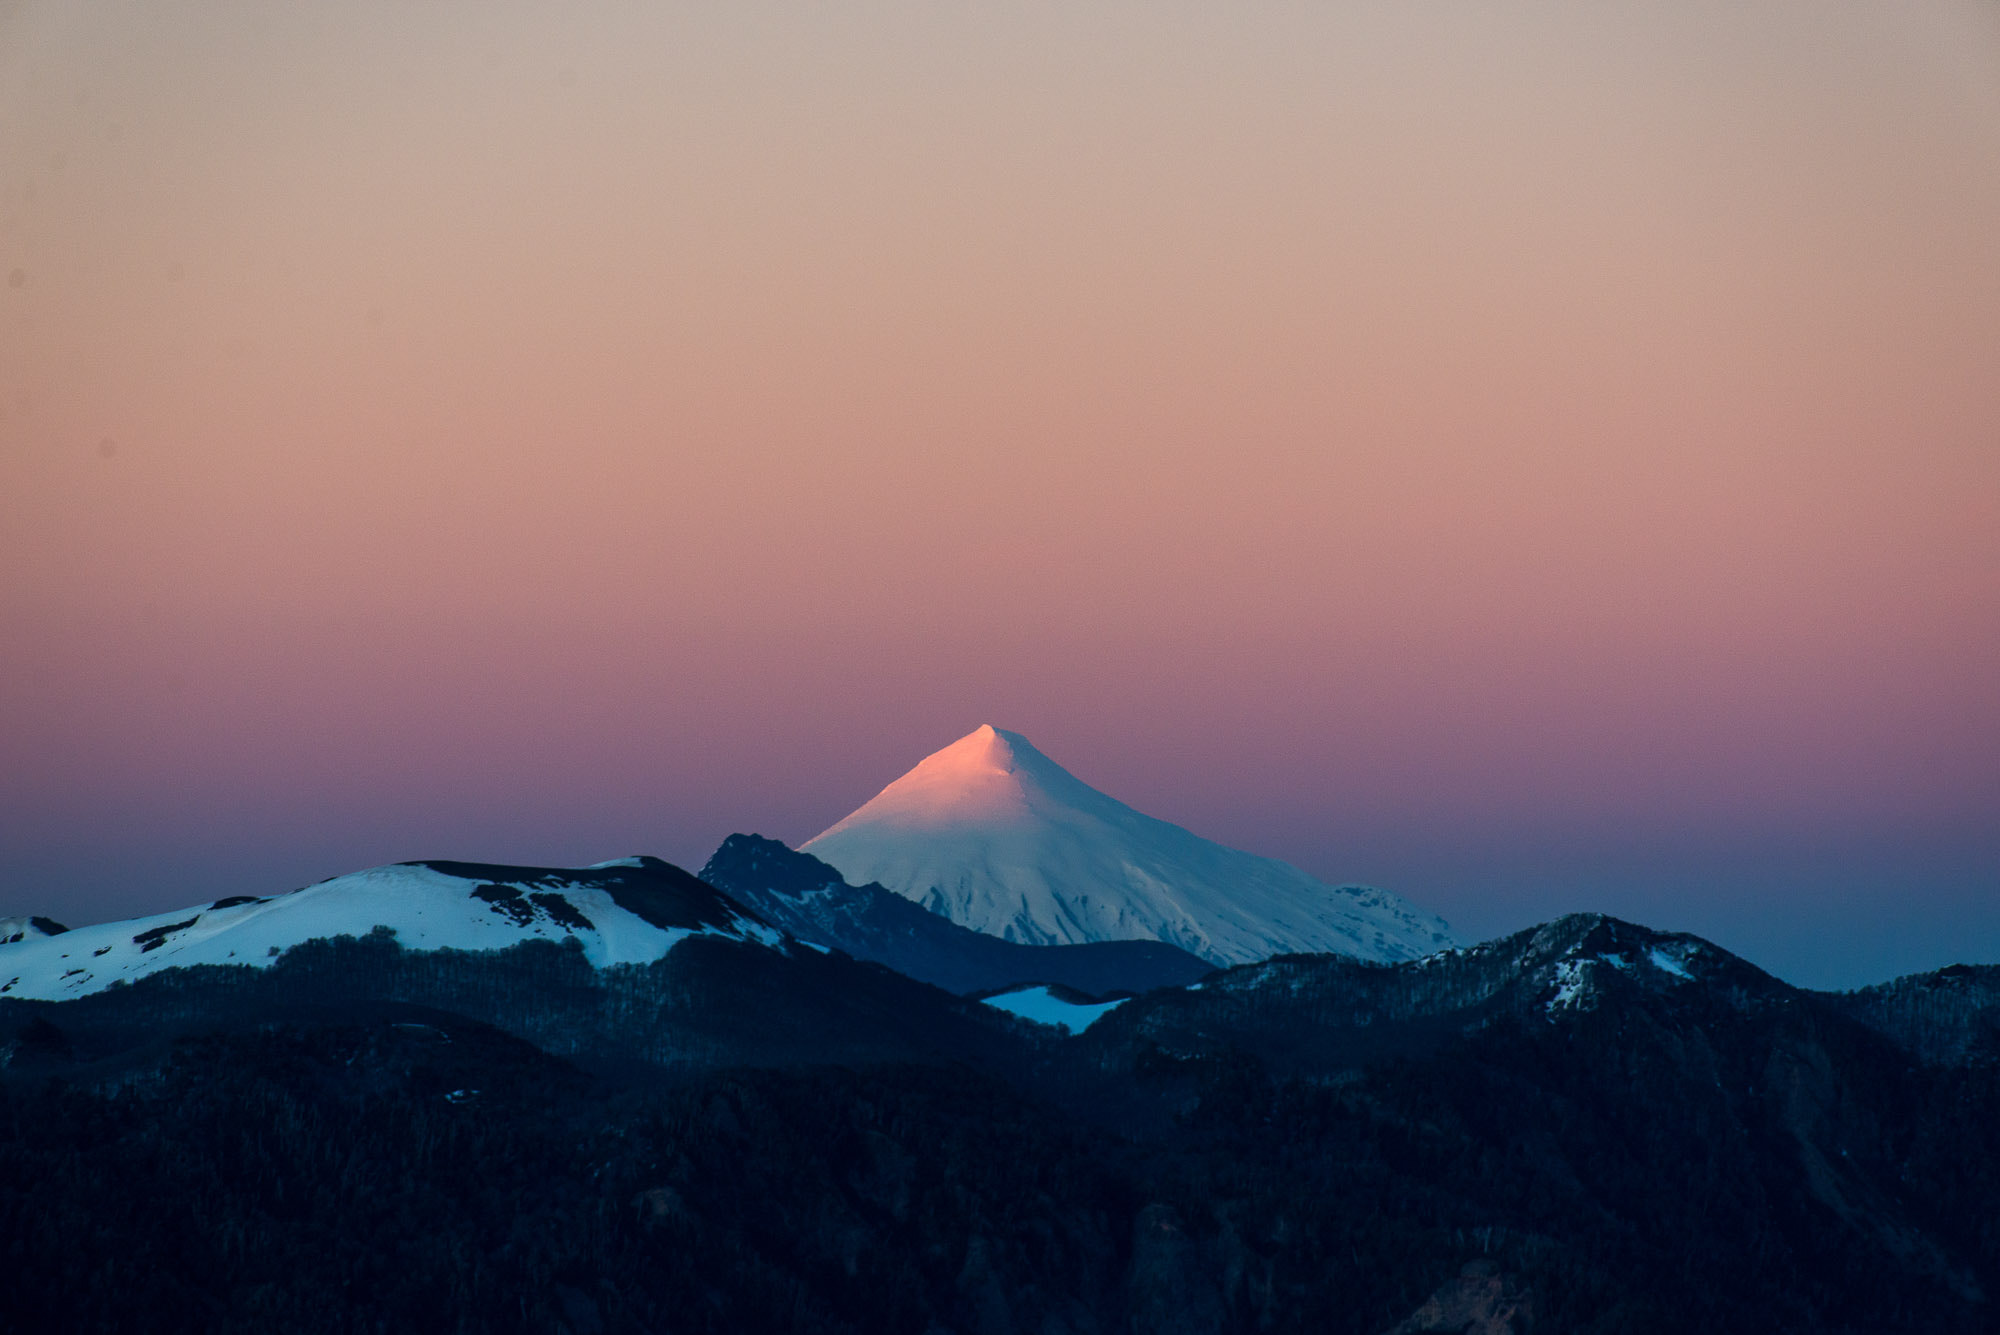 Nikon D610 + AF Nikkor 70-210mm f/4-5.6D sample photo. Sunrise at volcano villarica, chile photography